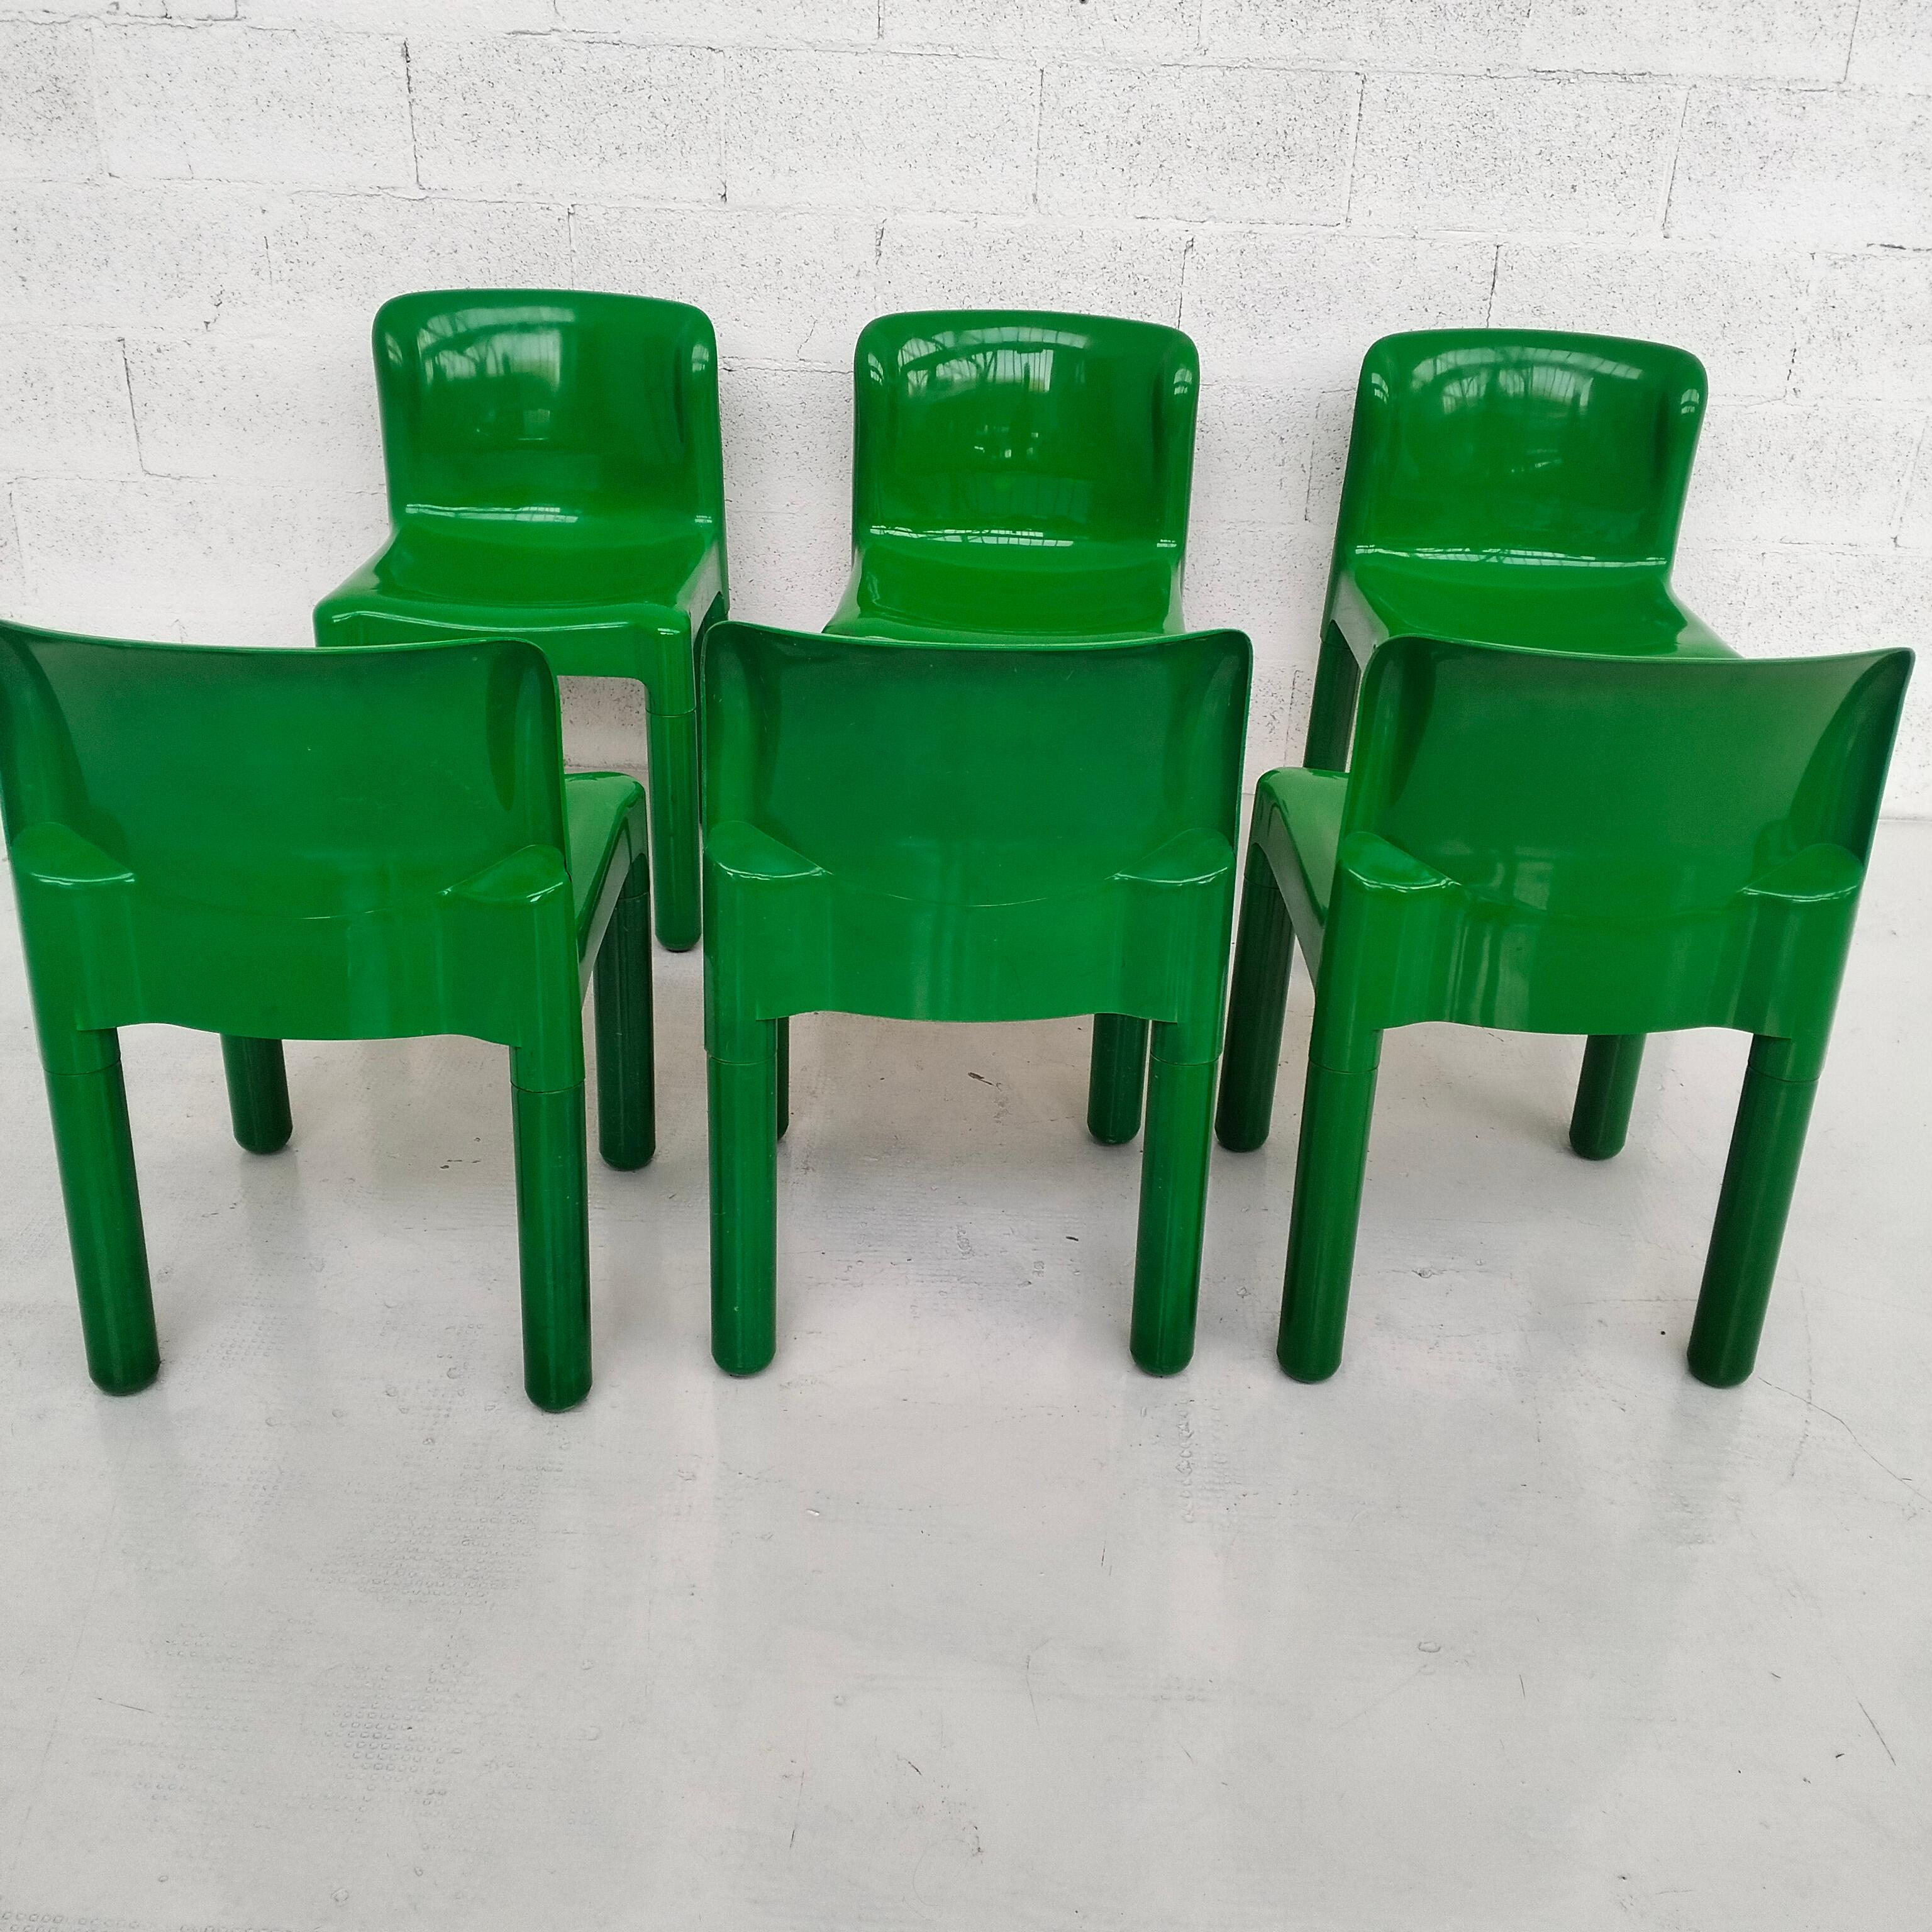 Grüne Kunststoffstühle 4875 von Carlo Bartoli für Kartell 1970er Jahre, 6-teilig 6